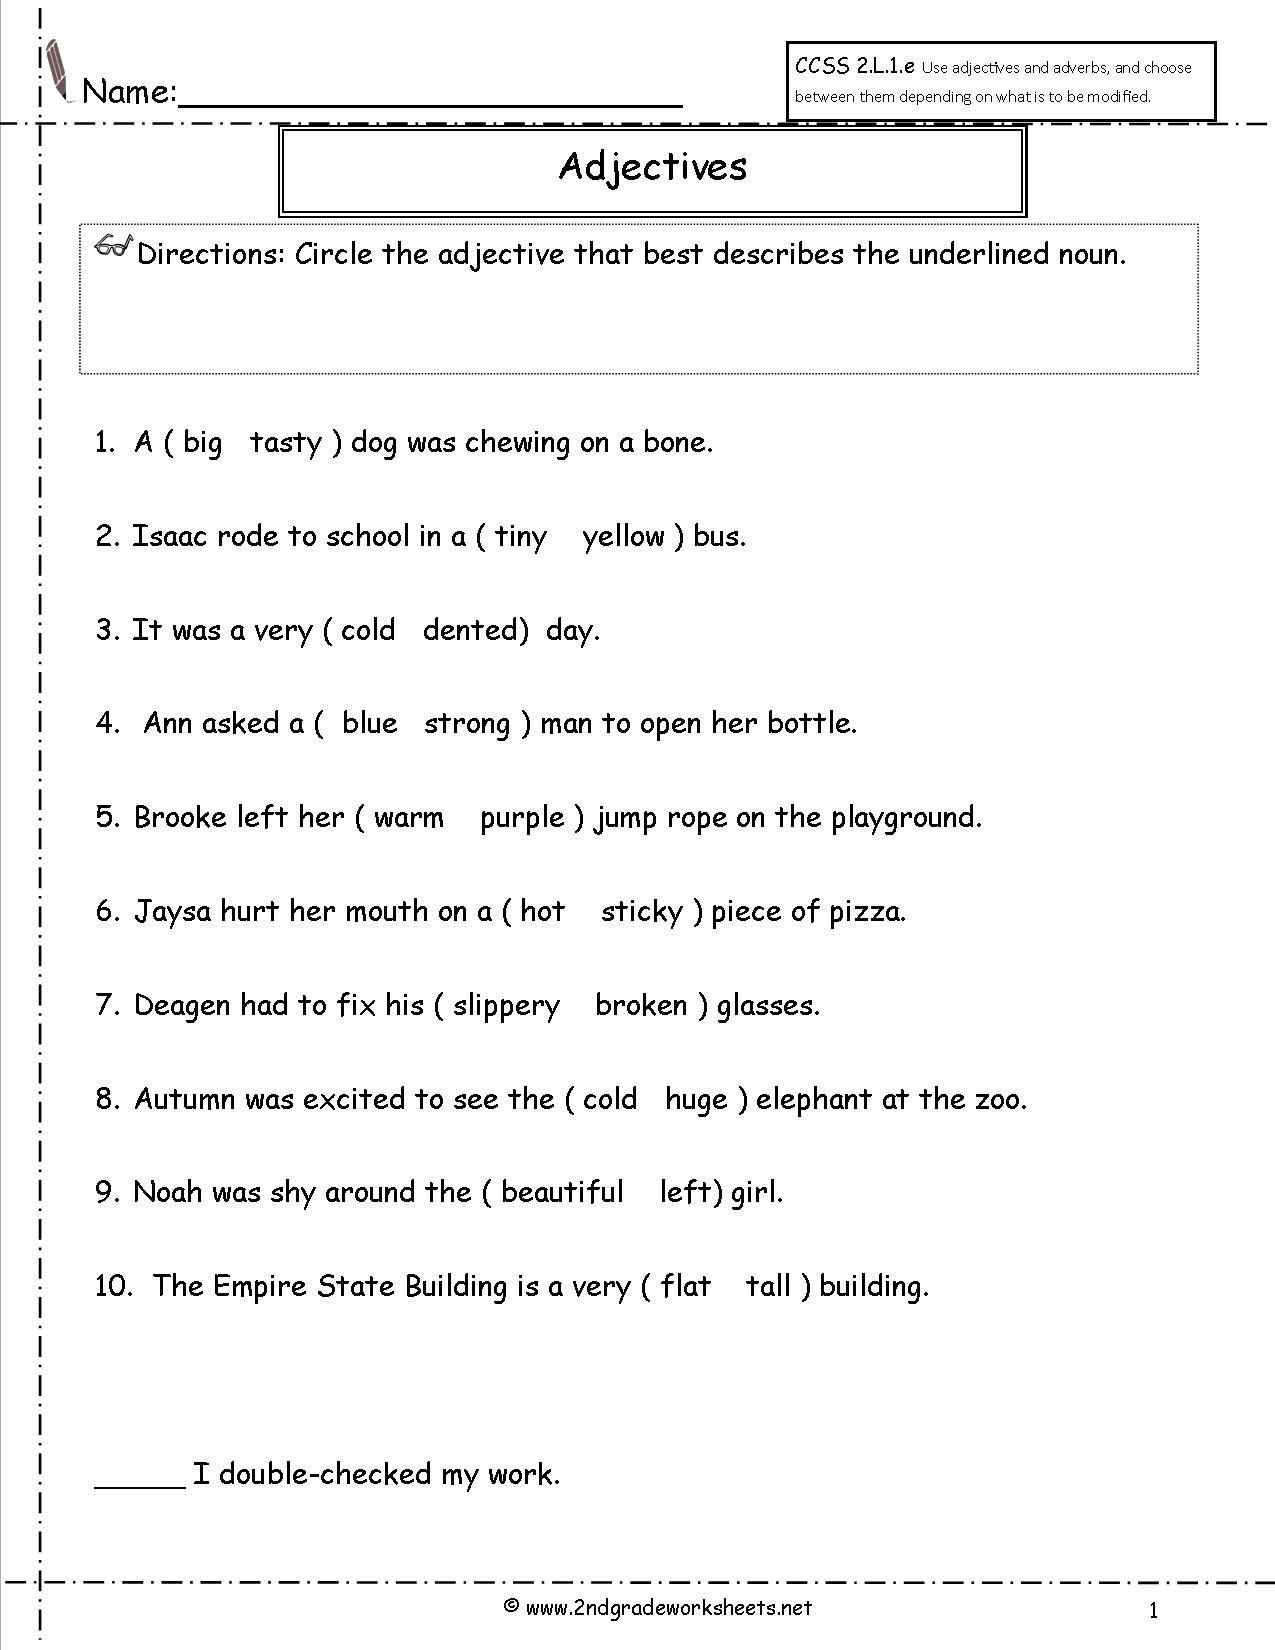 Adjectives Worksheets for Grade 2 Adjectives Worksheet